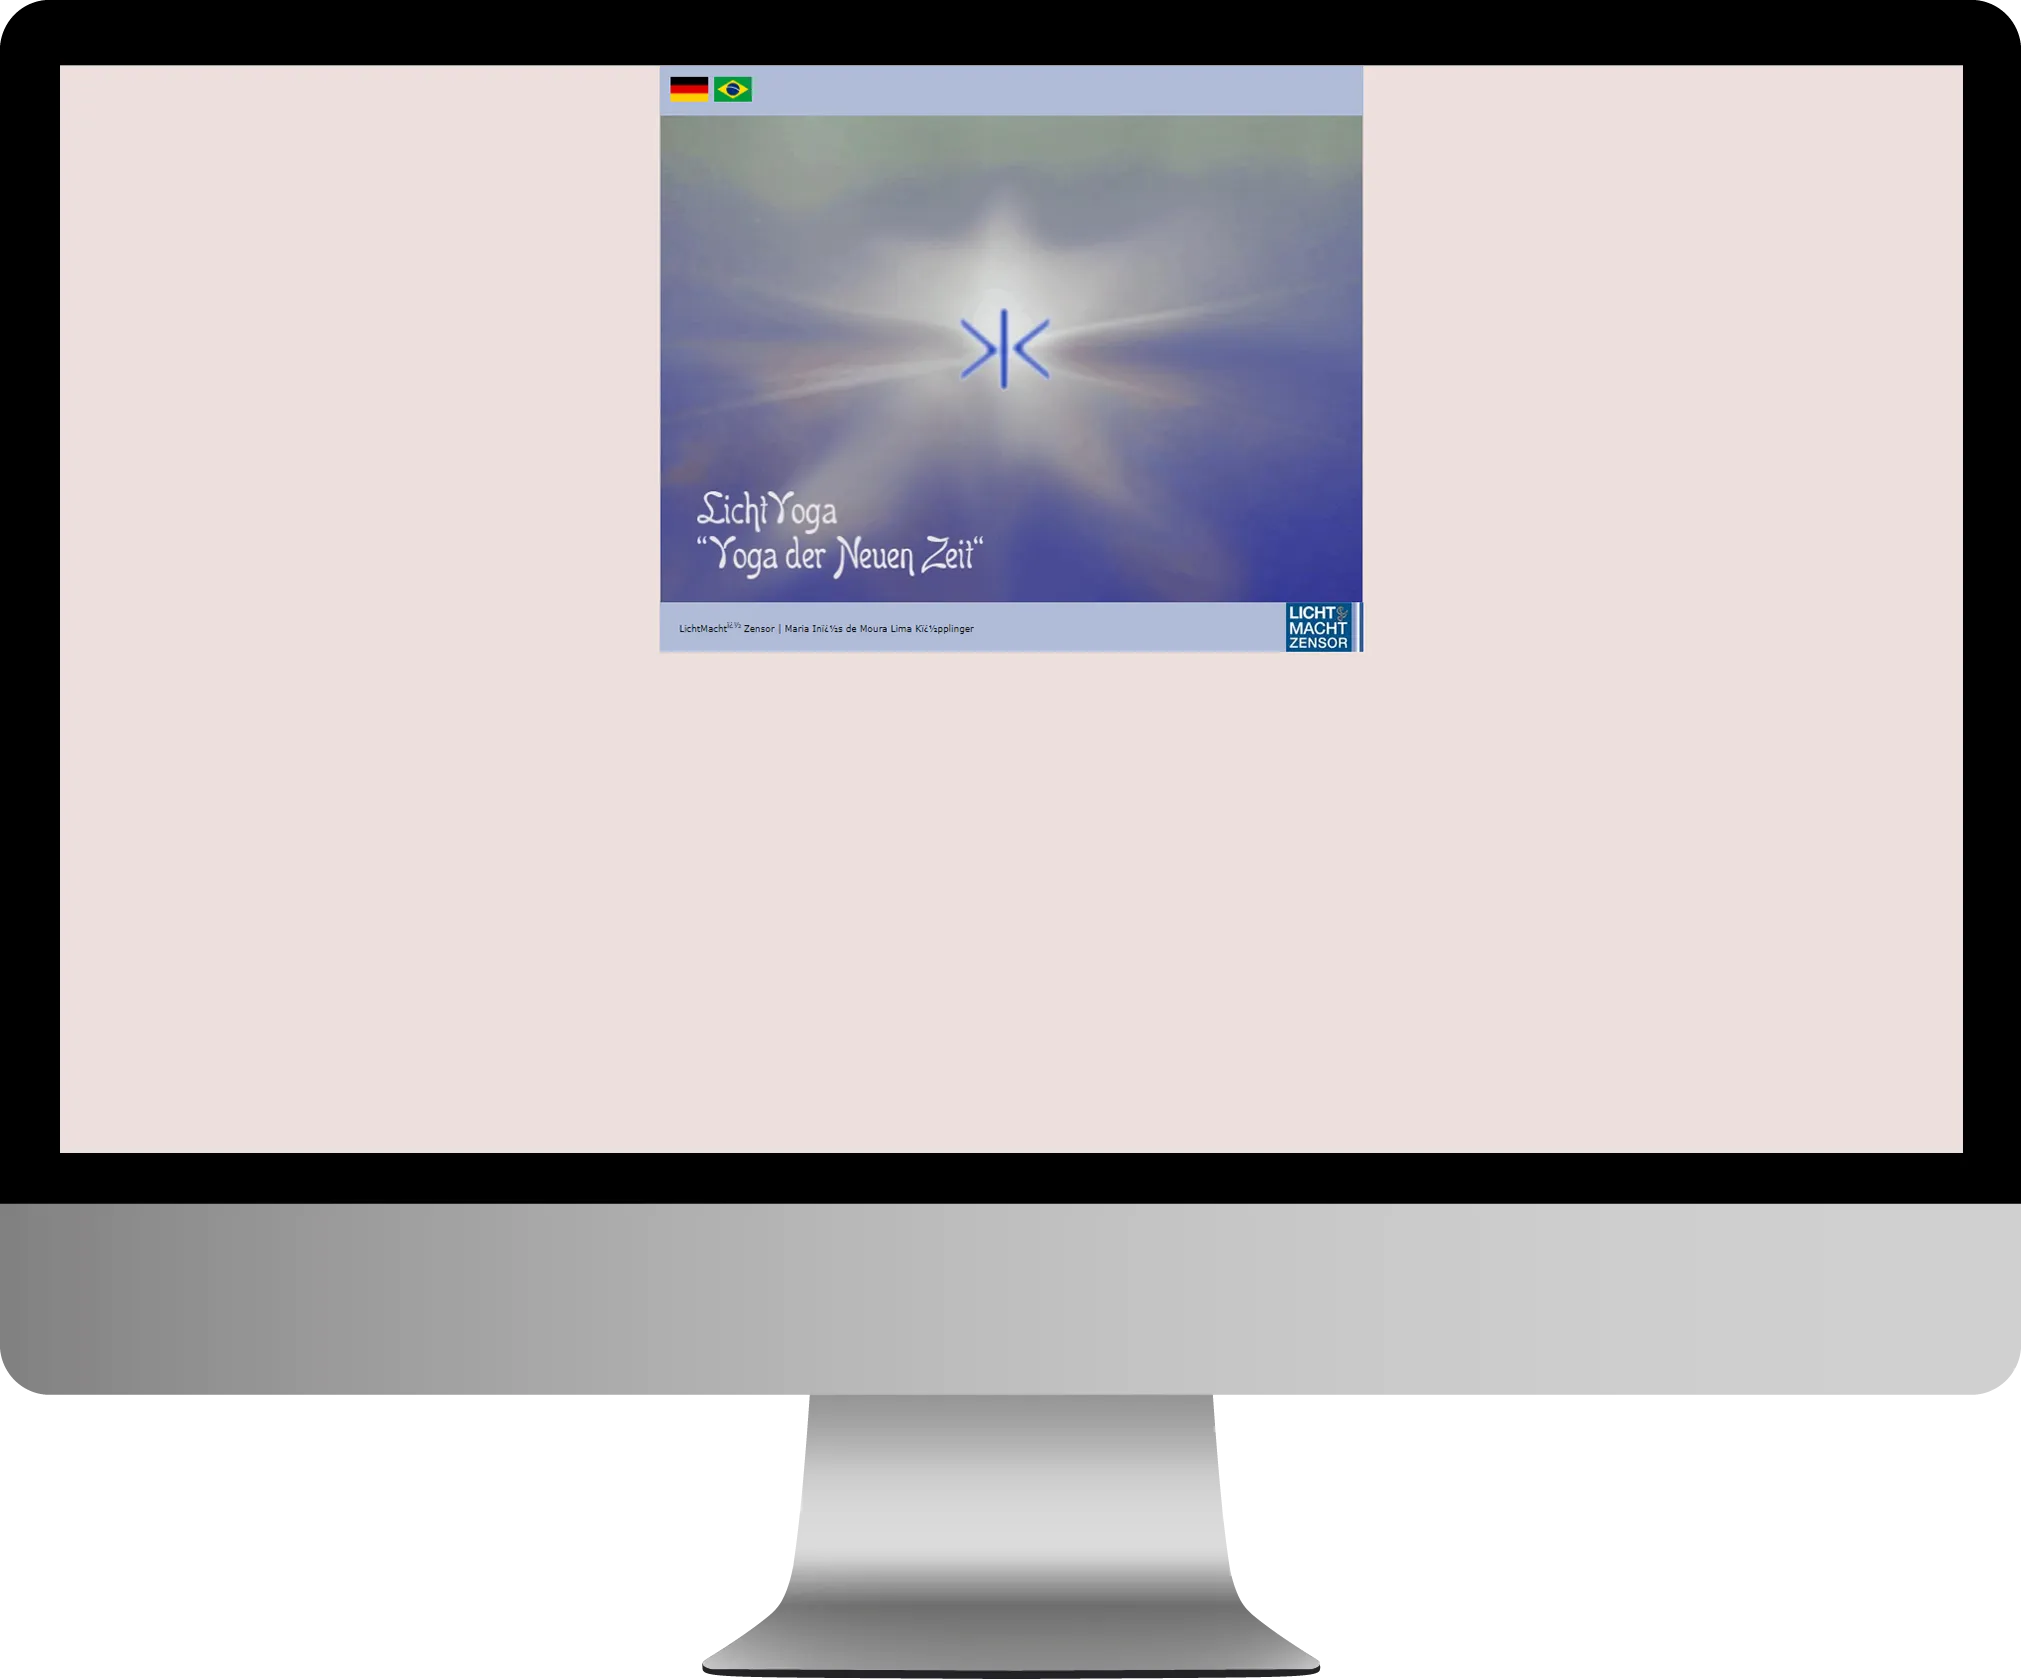 Veraltete LichtYoga-Webseite mit einfachem Layout und verblasstem Hintergrundbild, dargestellt auf einem alten Computermonitor.